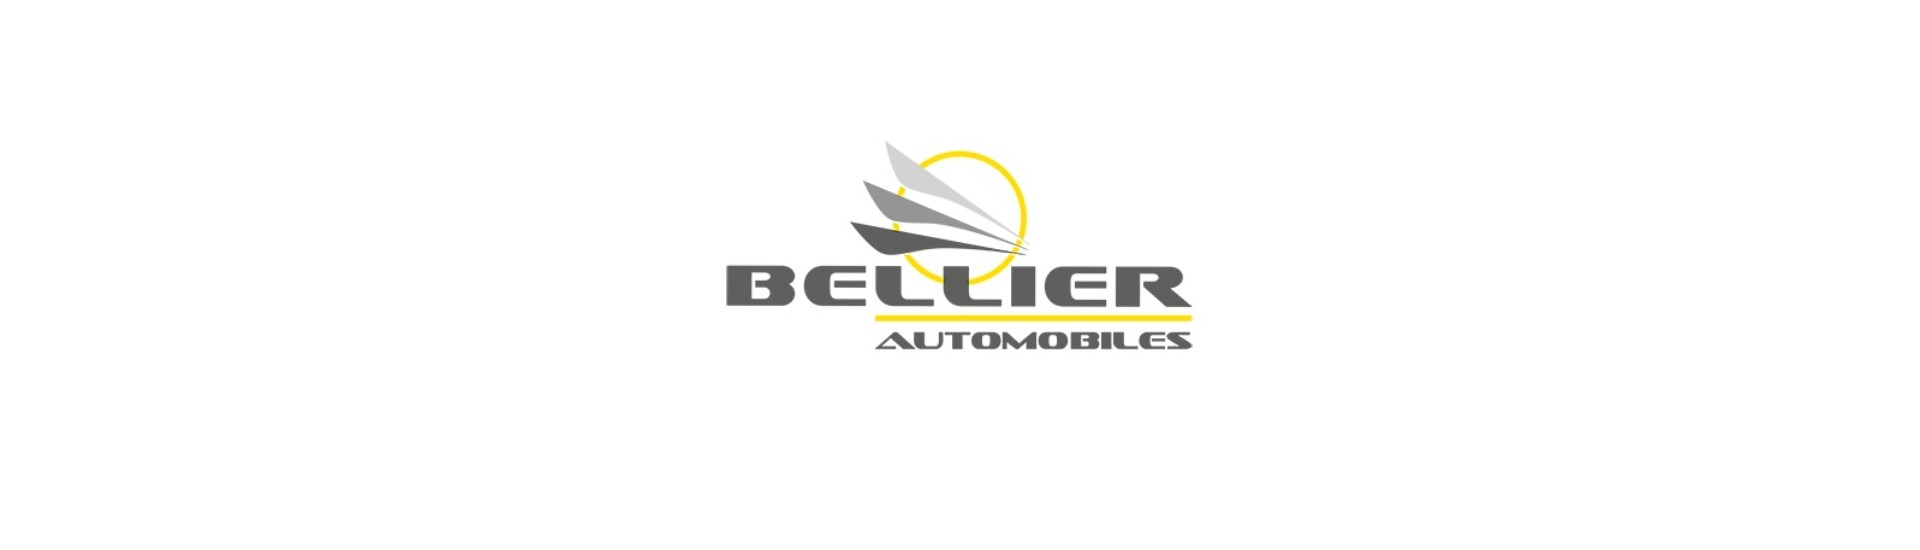 Brațe de suspendare la cel mai bun preț pentru o mașină fără permis Bellier